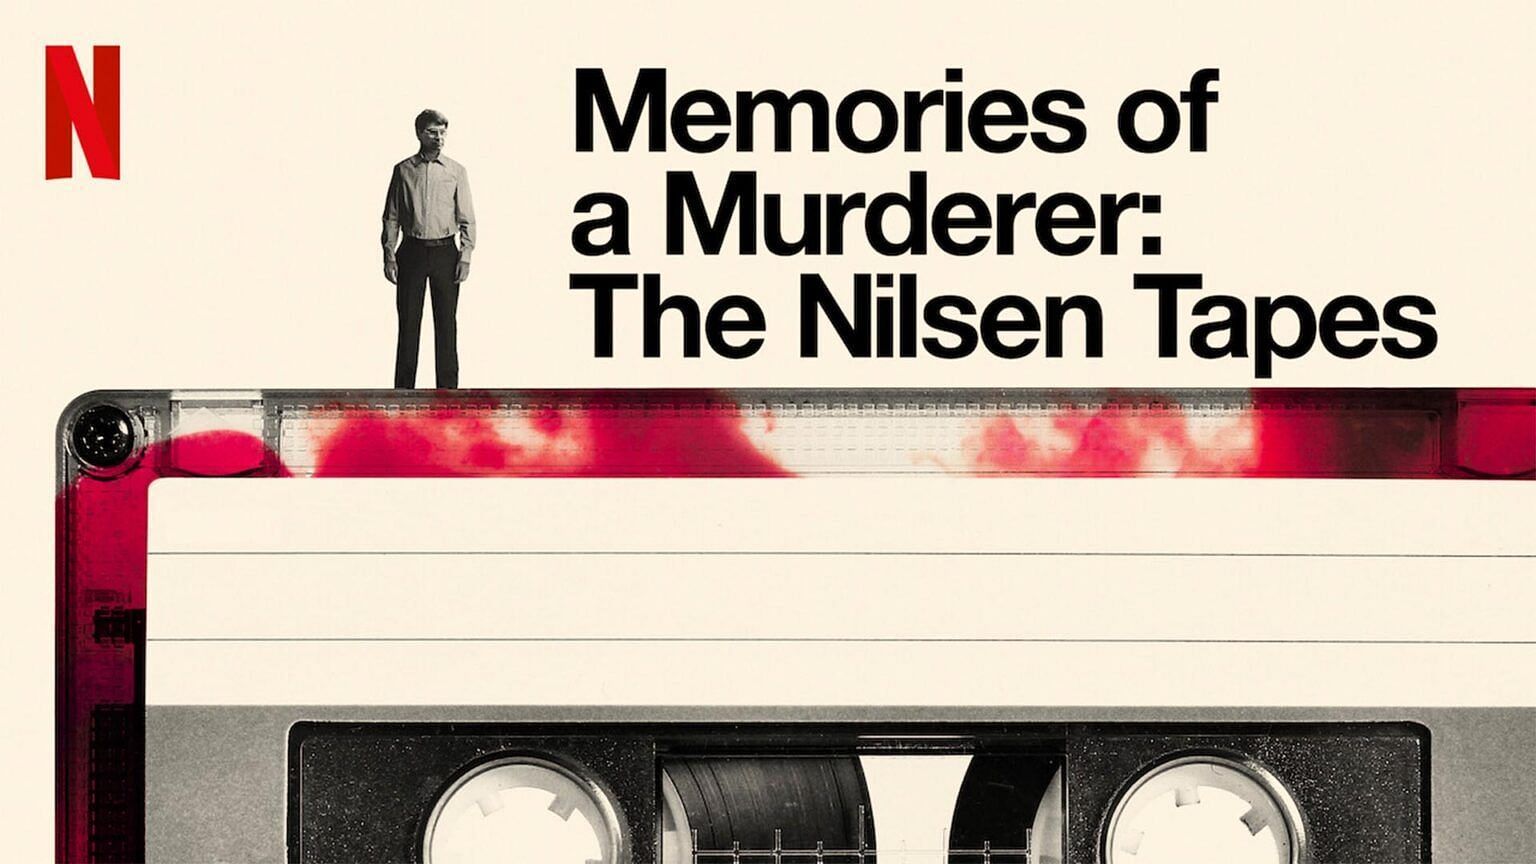 Memories of a Murderer (Image via Netflix)